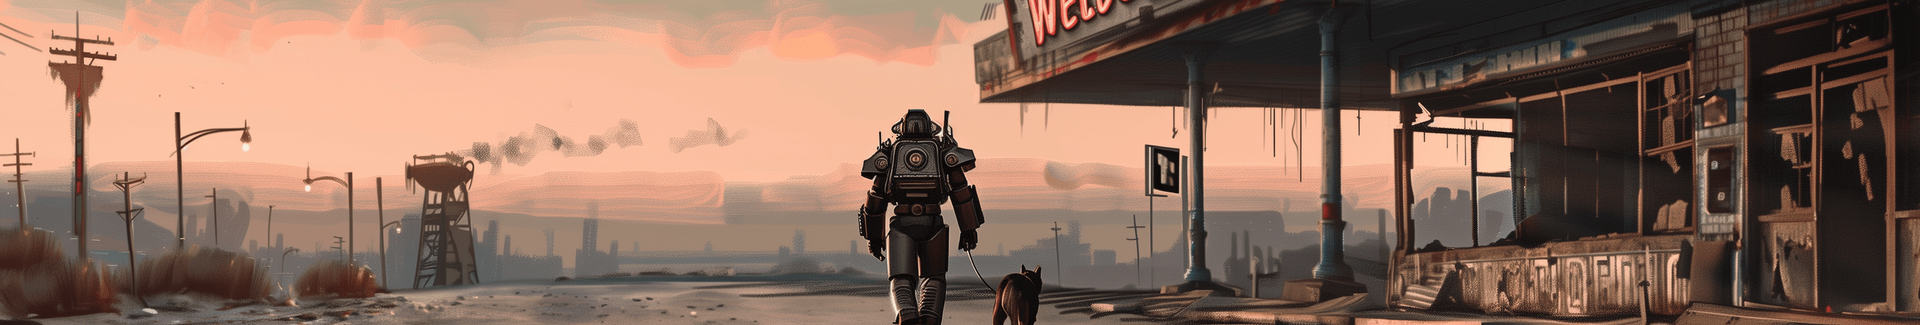 Fallout 76アイテム購入 - FO76アイテムマーケットプレイス